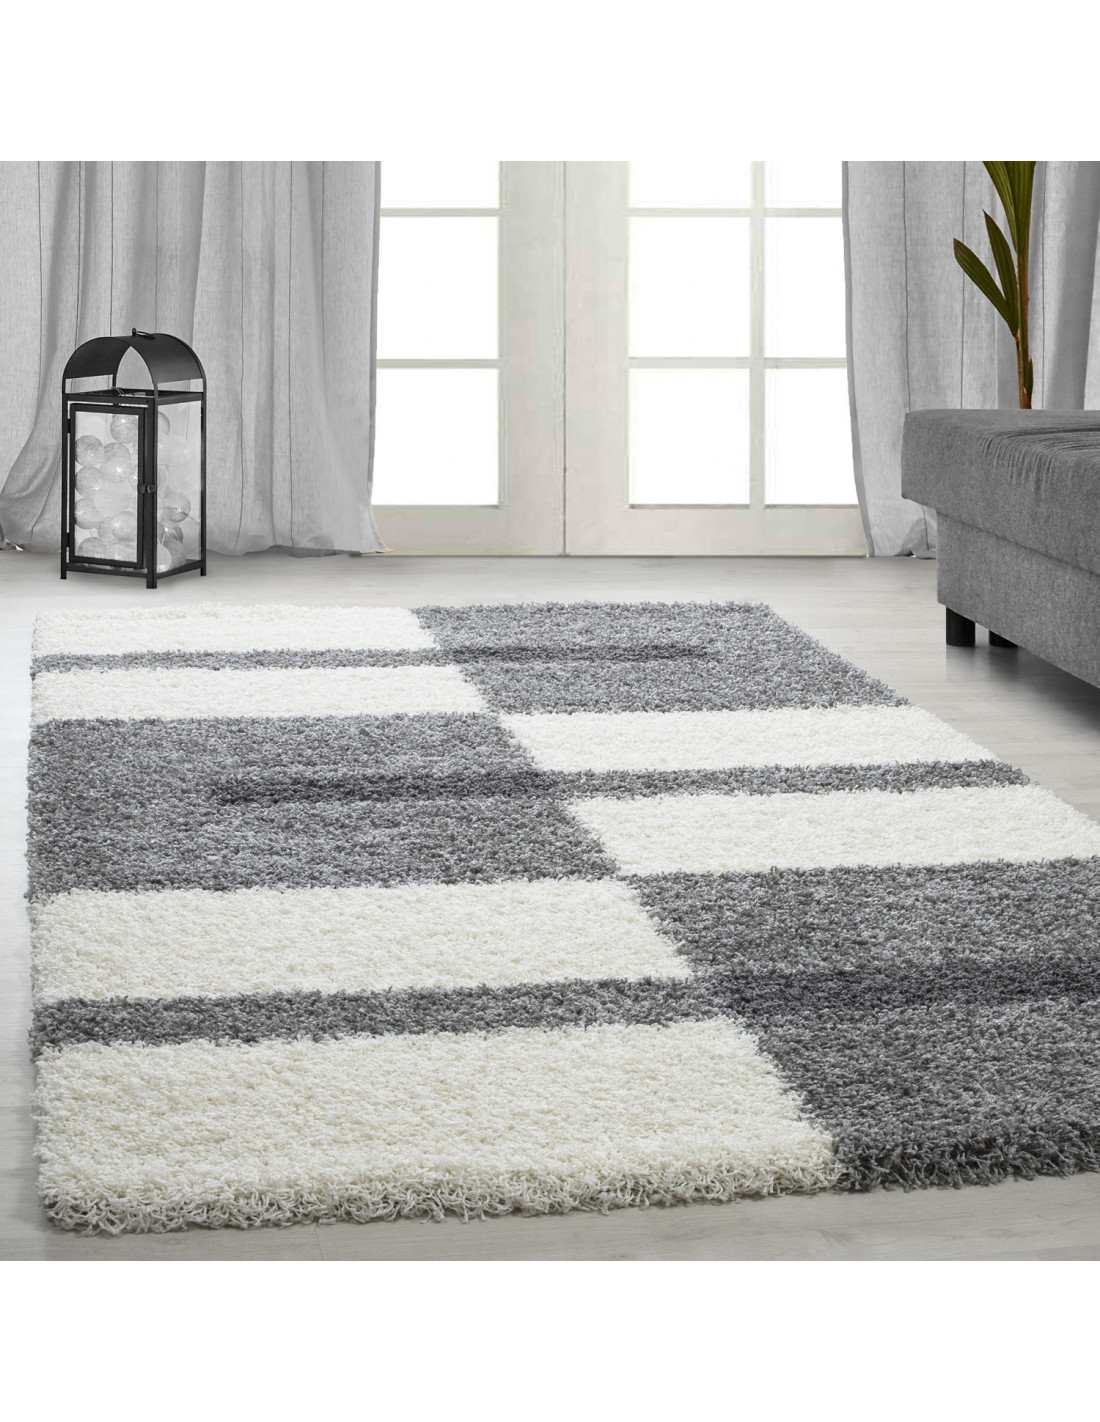 Altezza pelo tappeto shaggy 3 cm grigio-bianco-grigio chiaro